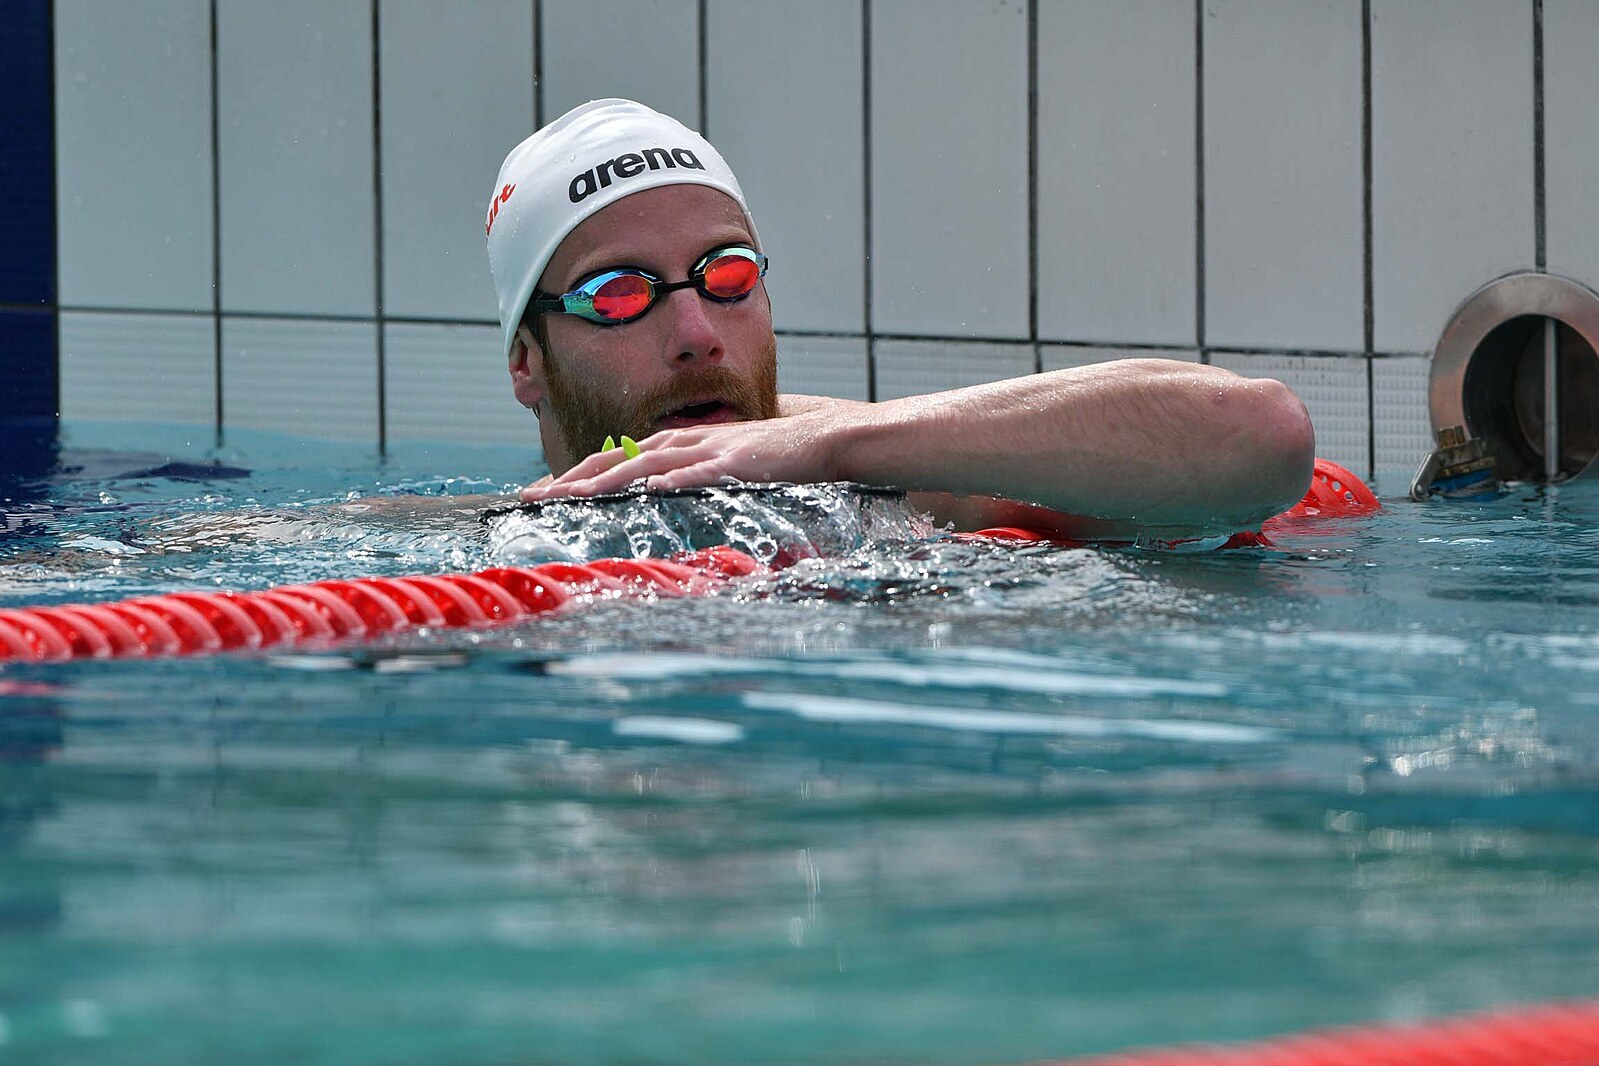 Šefl zaplaval v Eindhovenu rekord na 50 m motýlek a kvalifikoval se na MS -  iDNES.cz